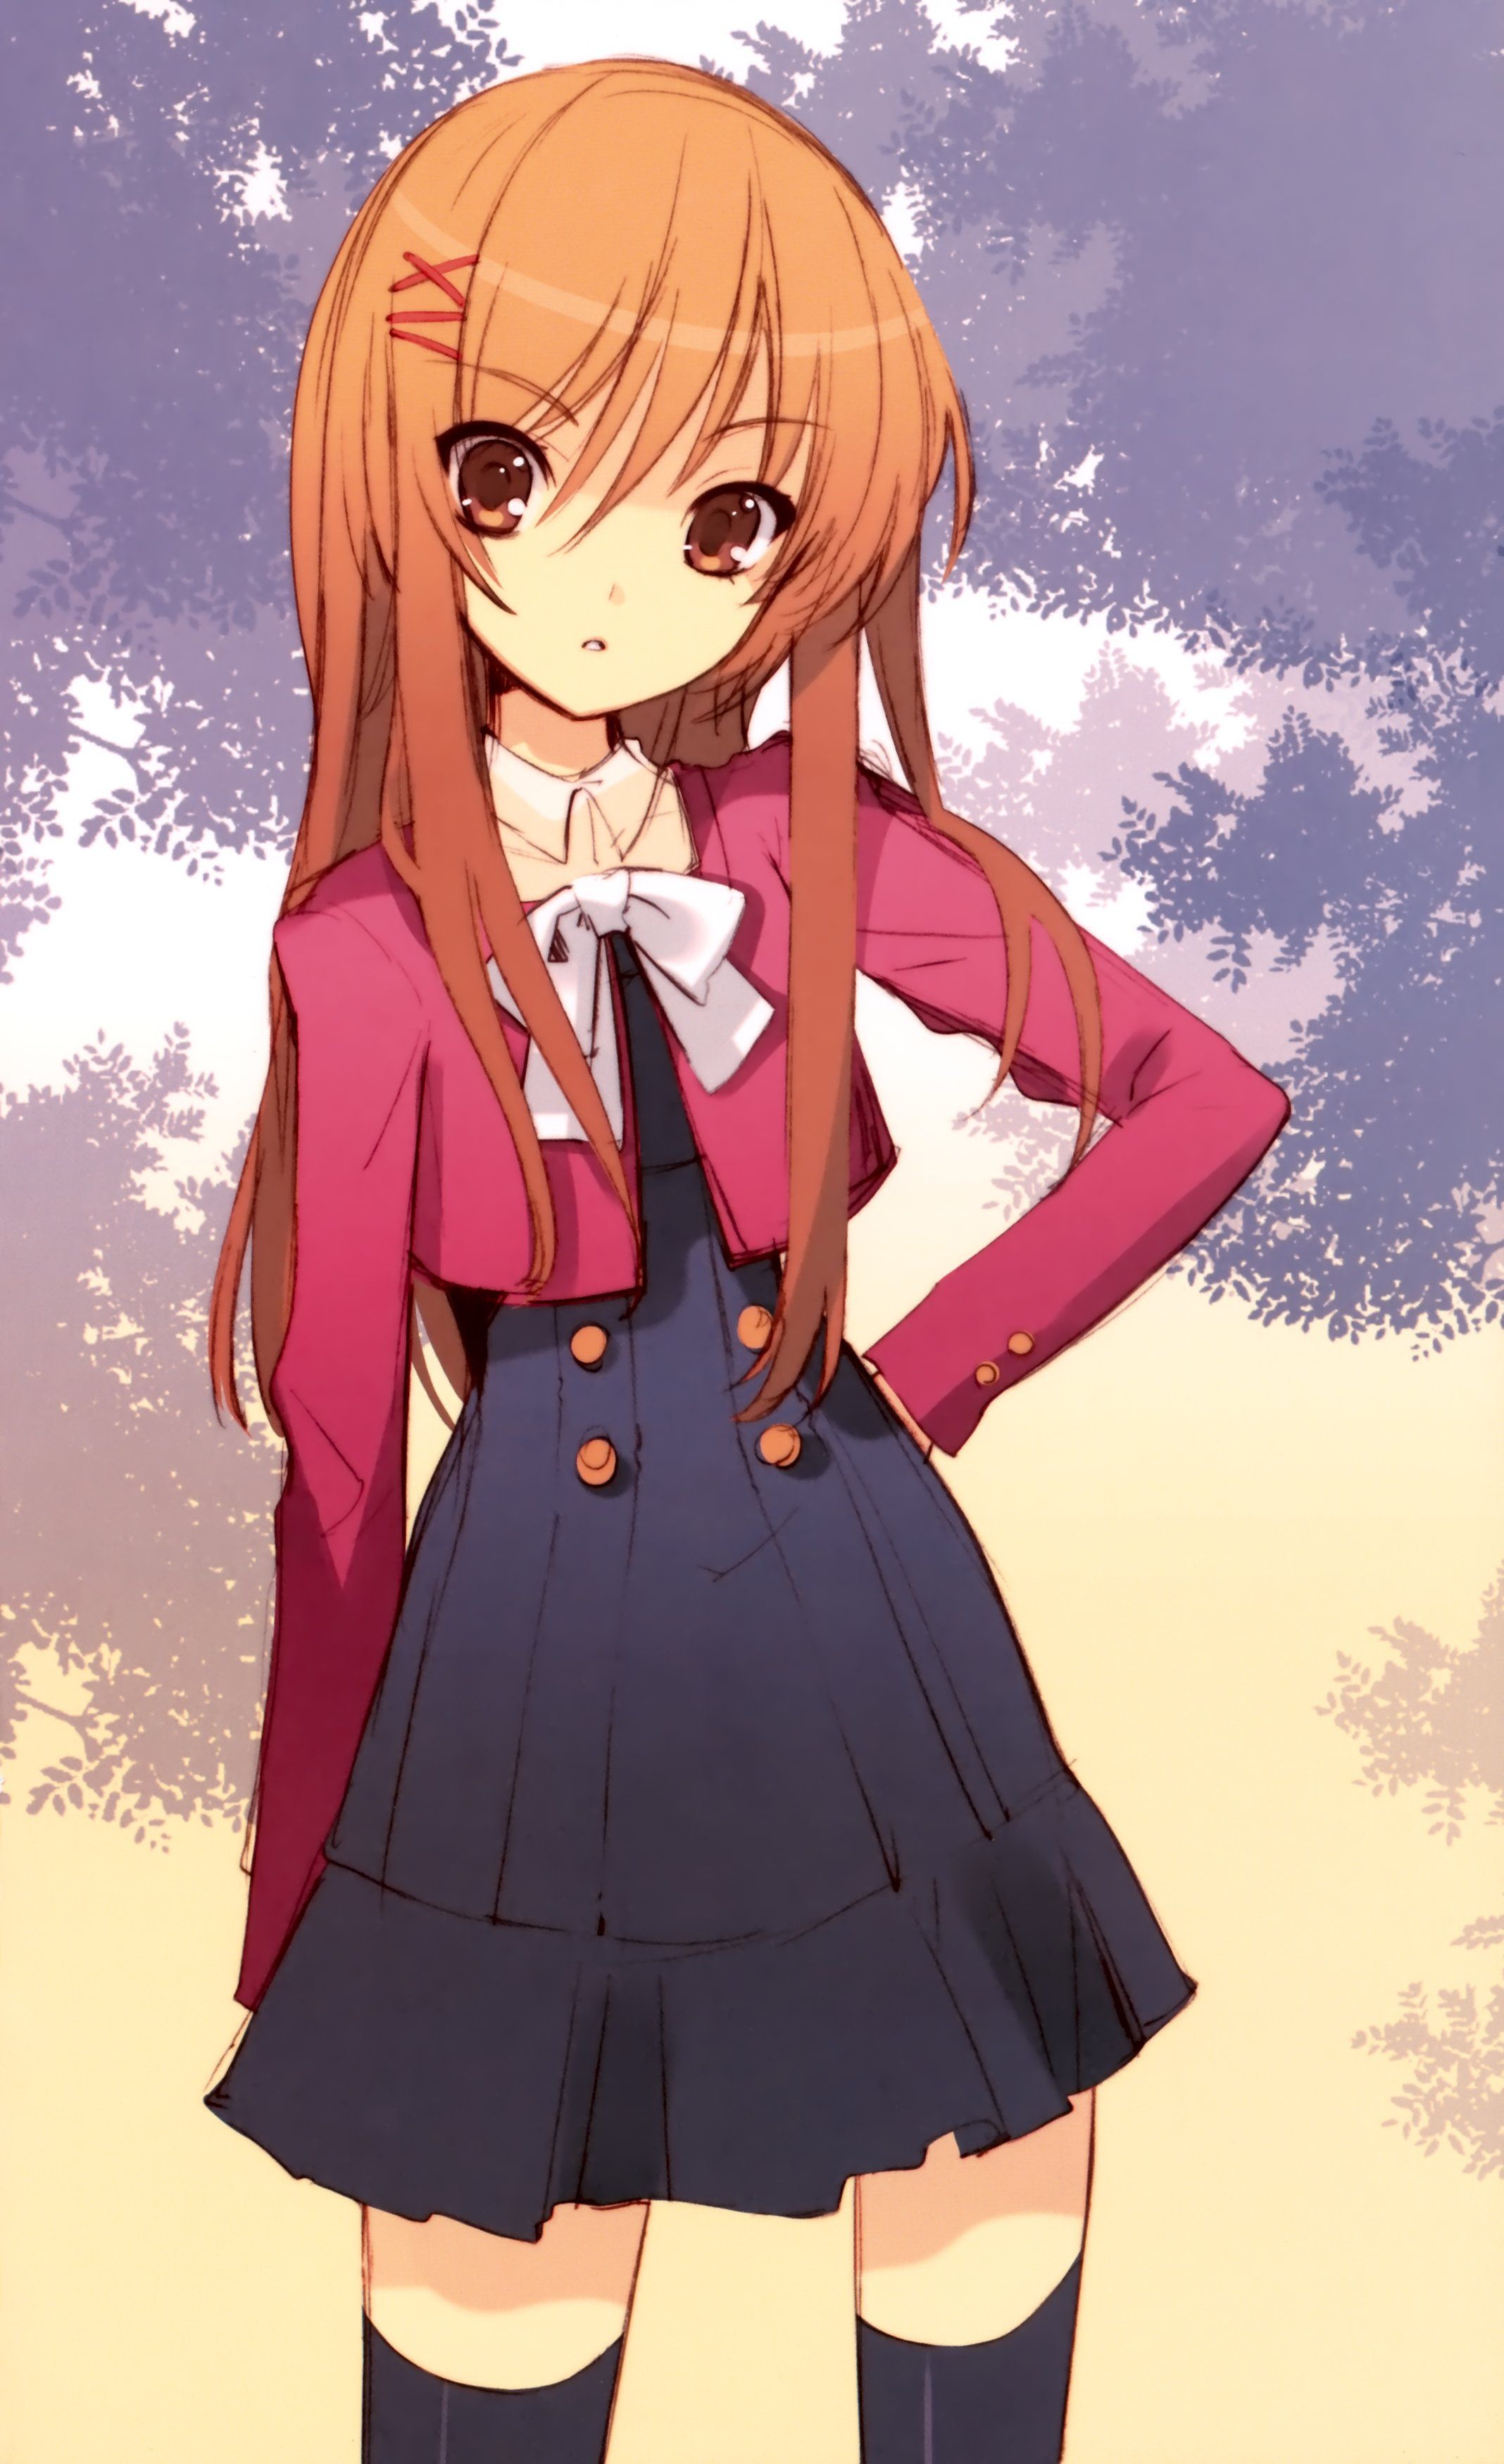 Cute Anime Girl With Long Hair